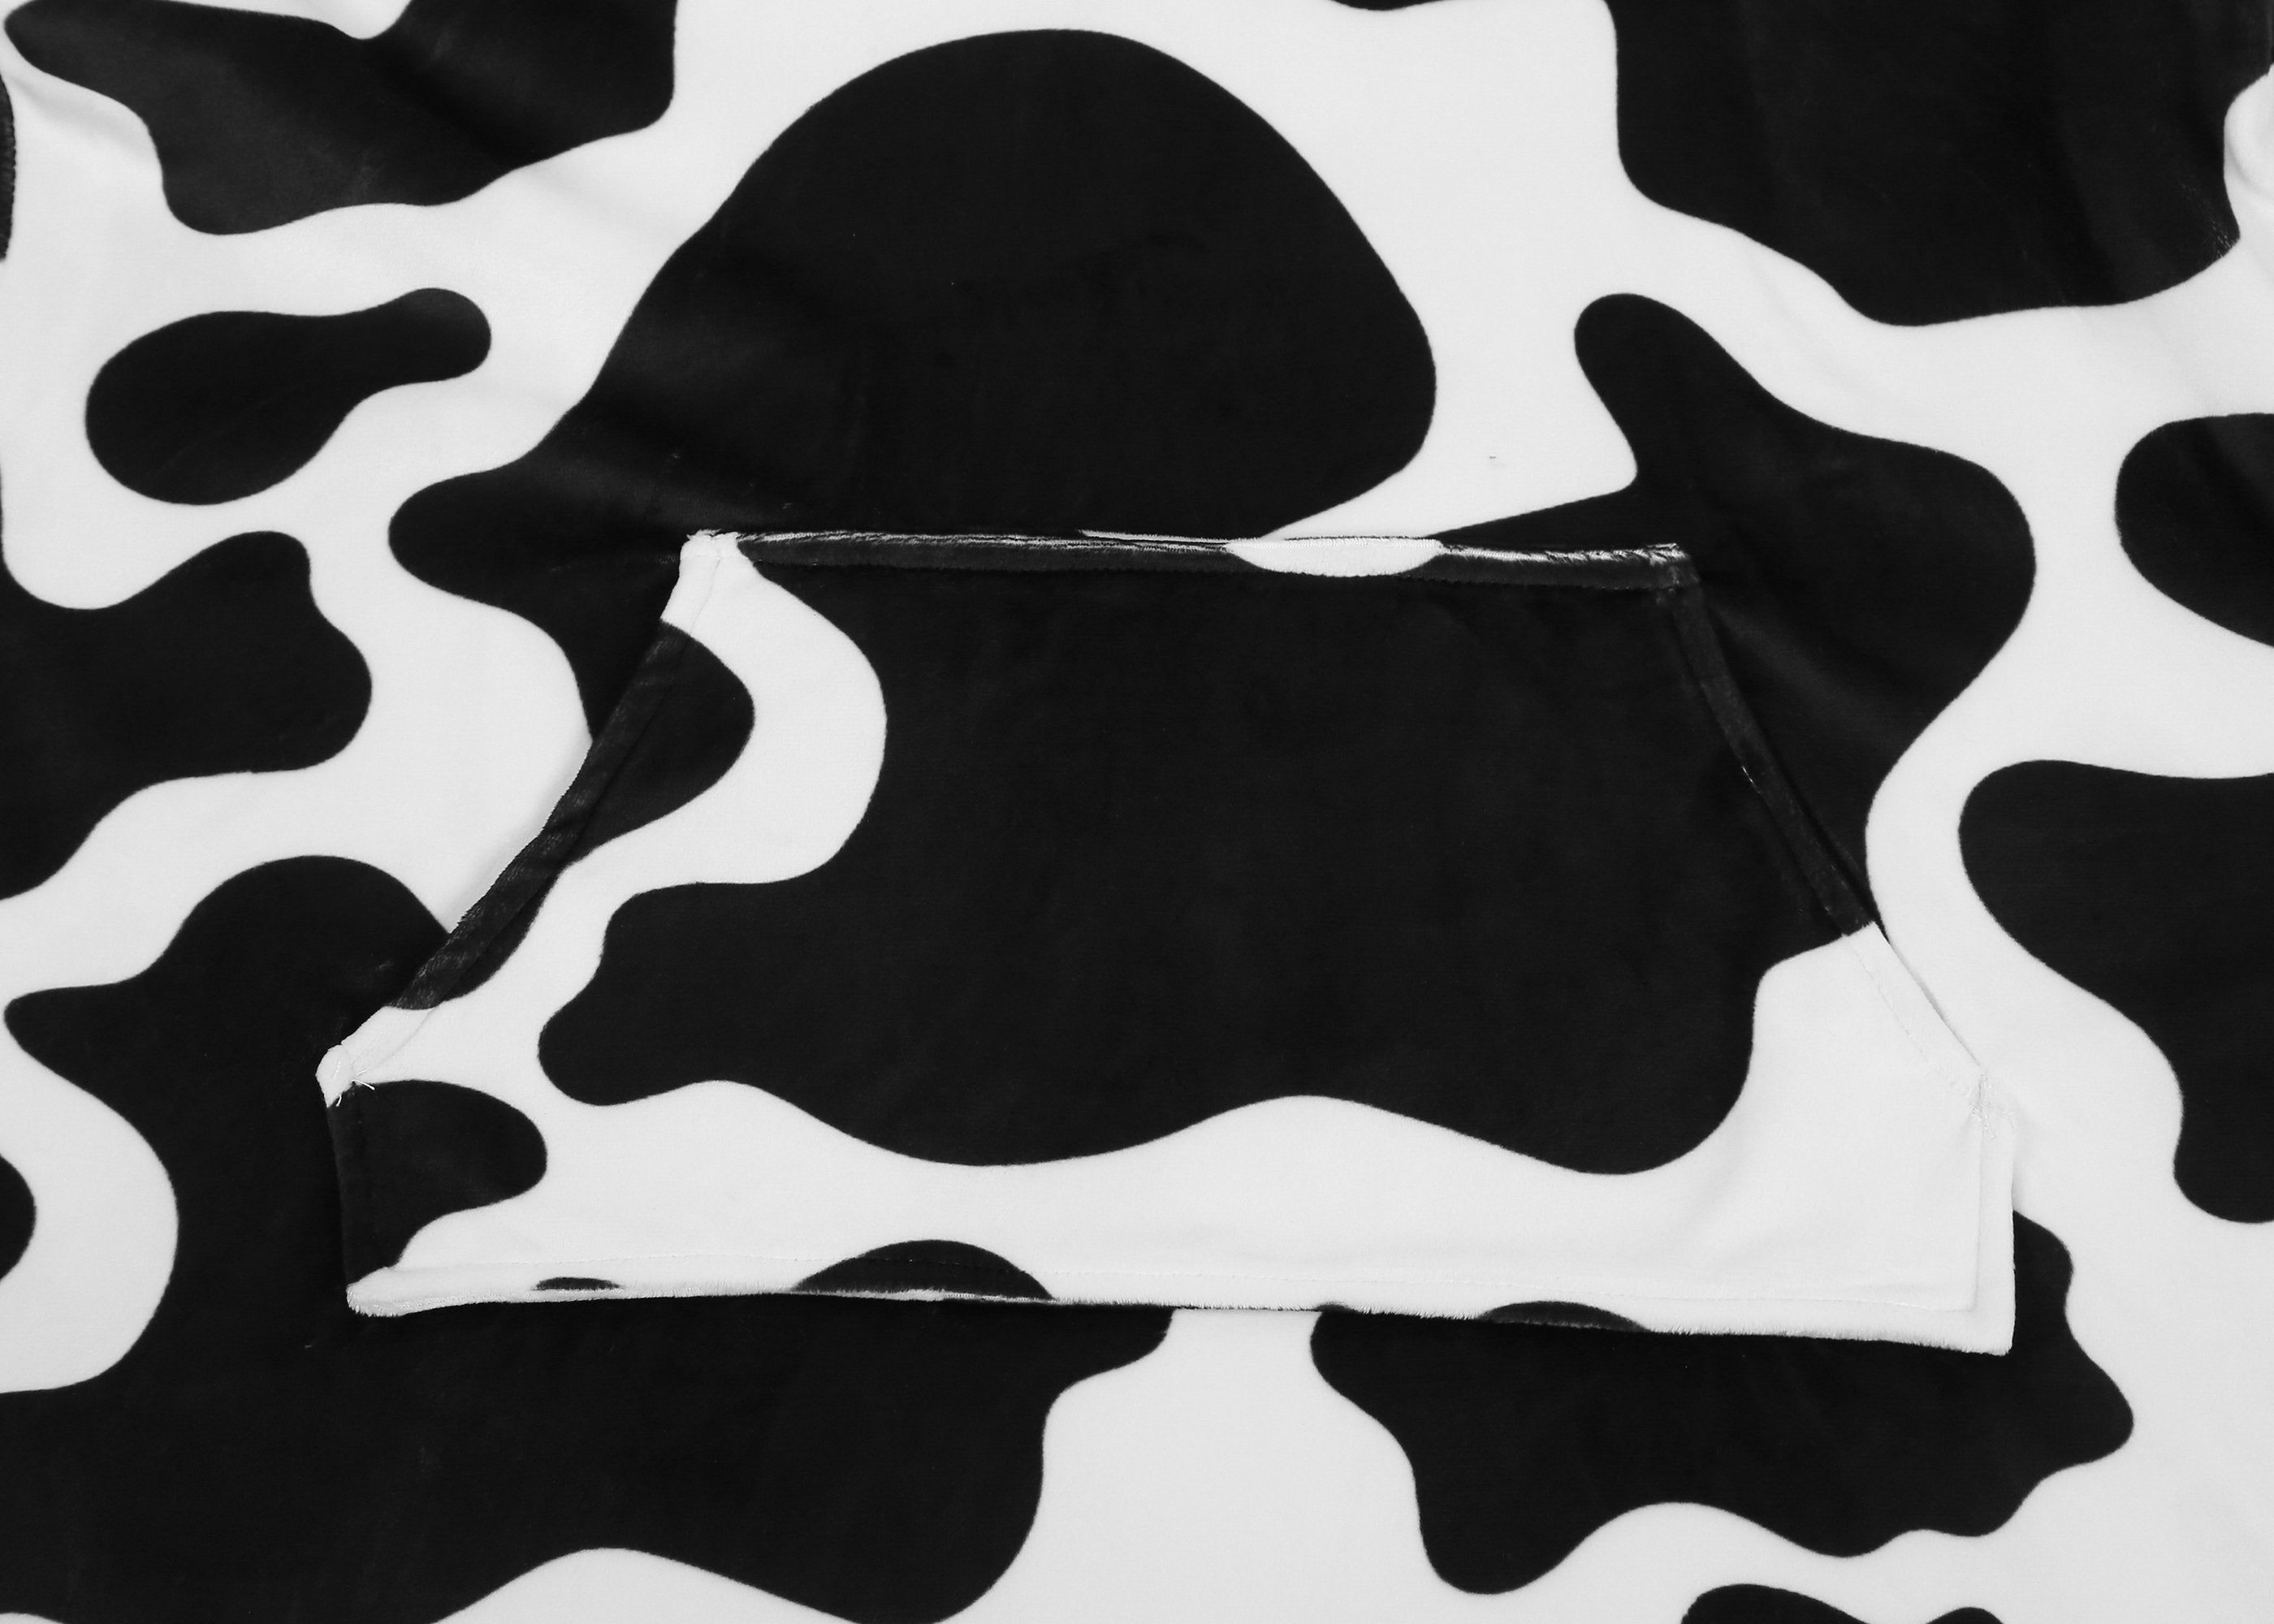 TARRAMARRA® Kids Reversible Hoodie Blanket Cow Pattern